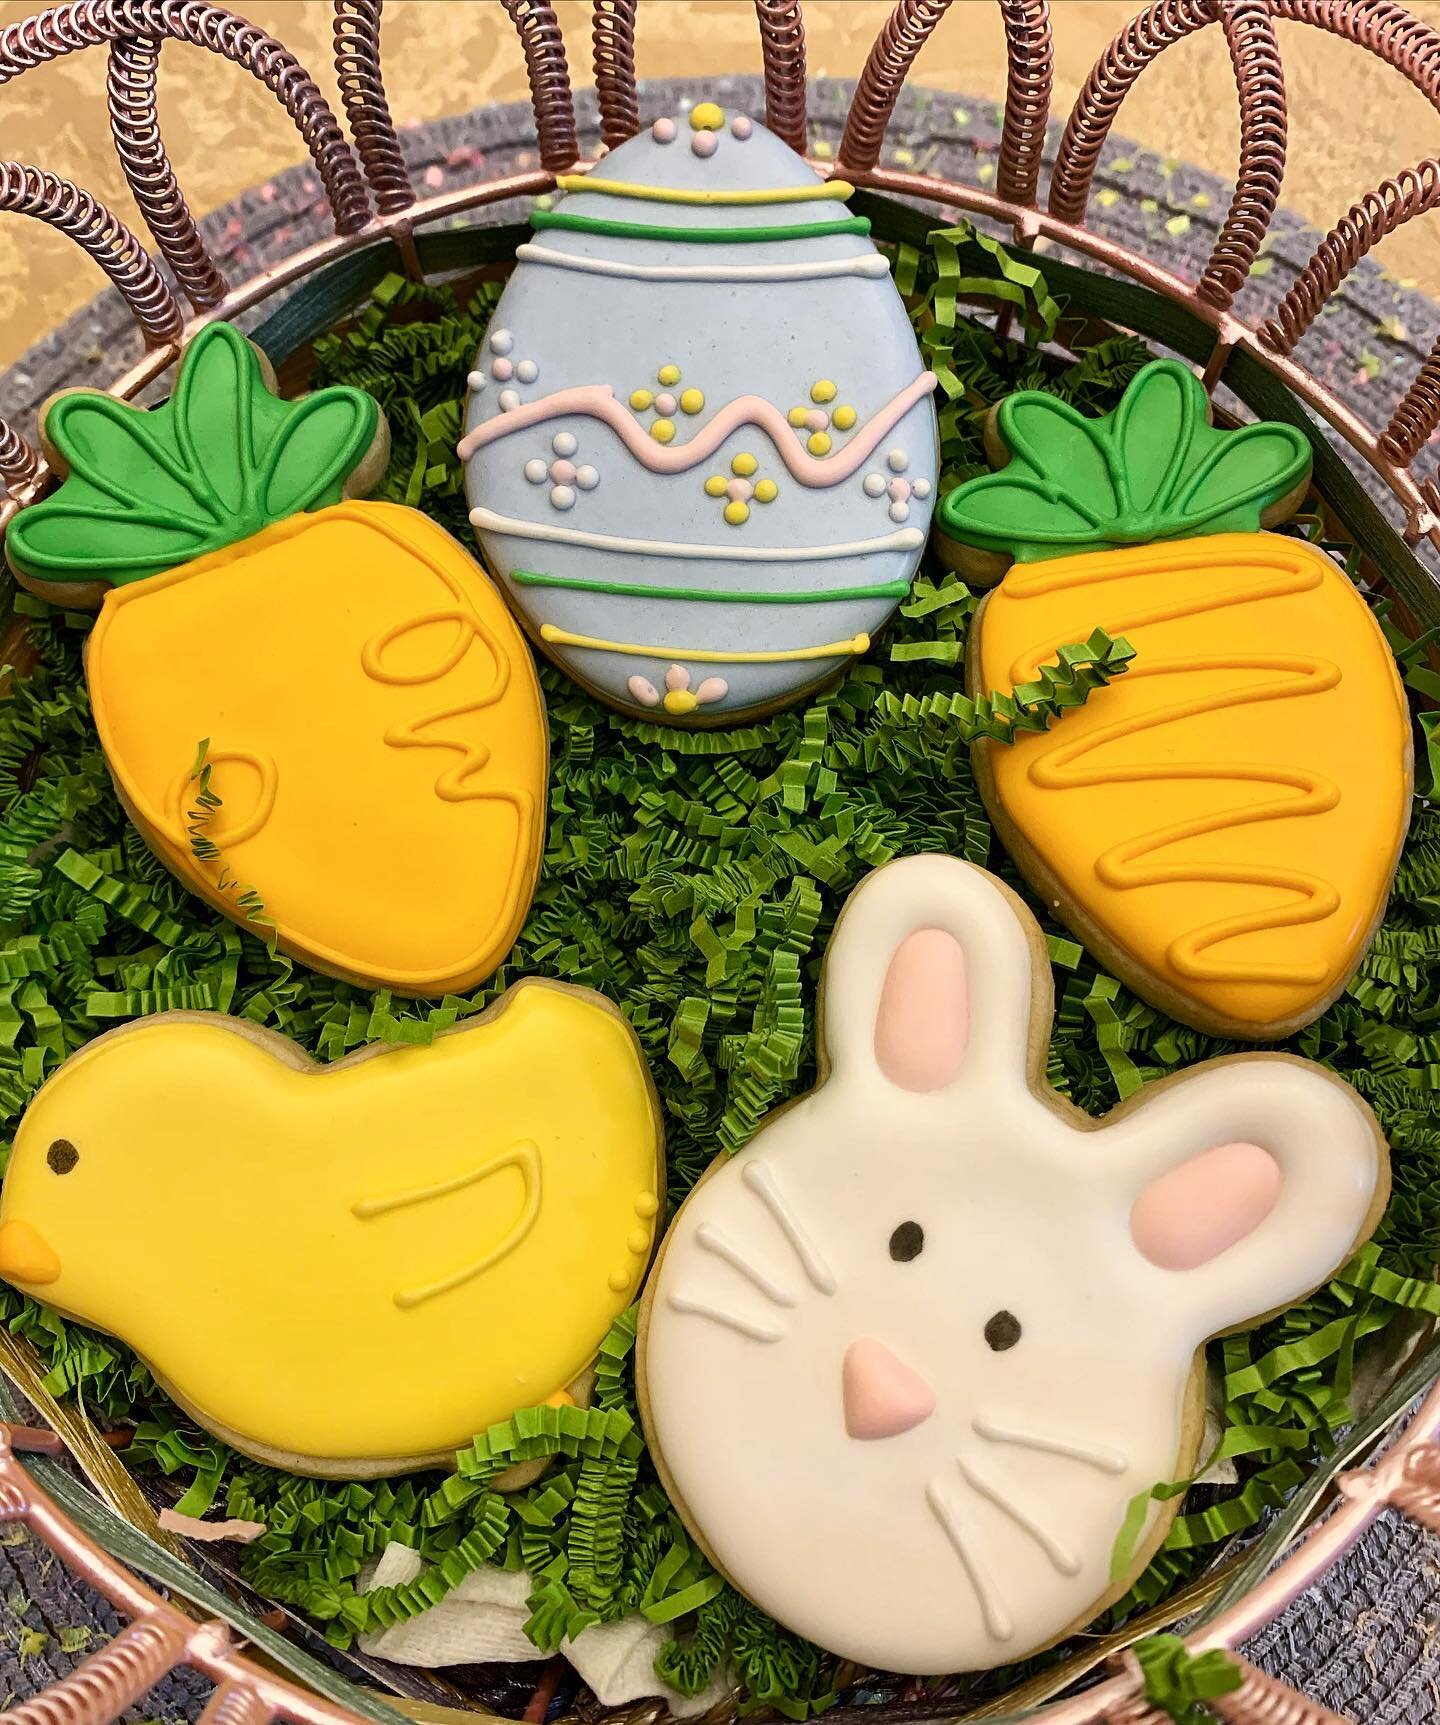 Happy Easter Everyone!!! 🐣🐰 
.
.
.
.
.
.
.
#easter #eastercookies #cookiesofinstagram #sugarcookies #sugarcookiesofinstagram #cookiestagram #royalicing #homebaker